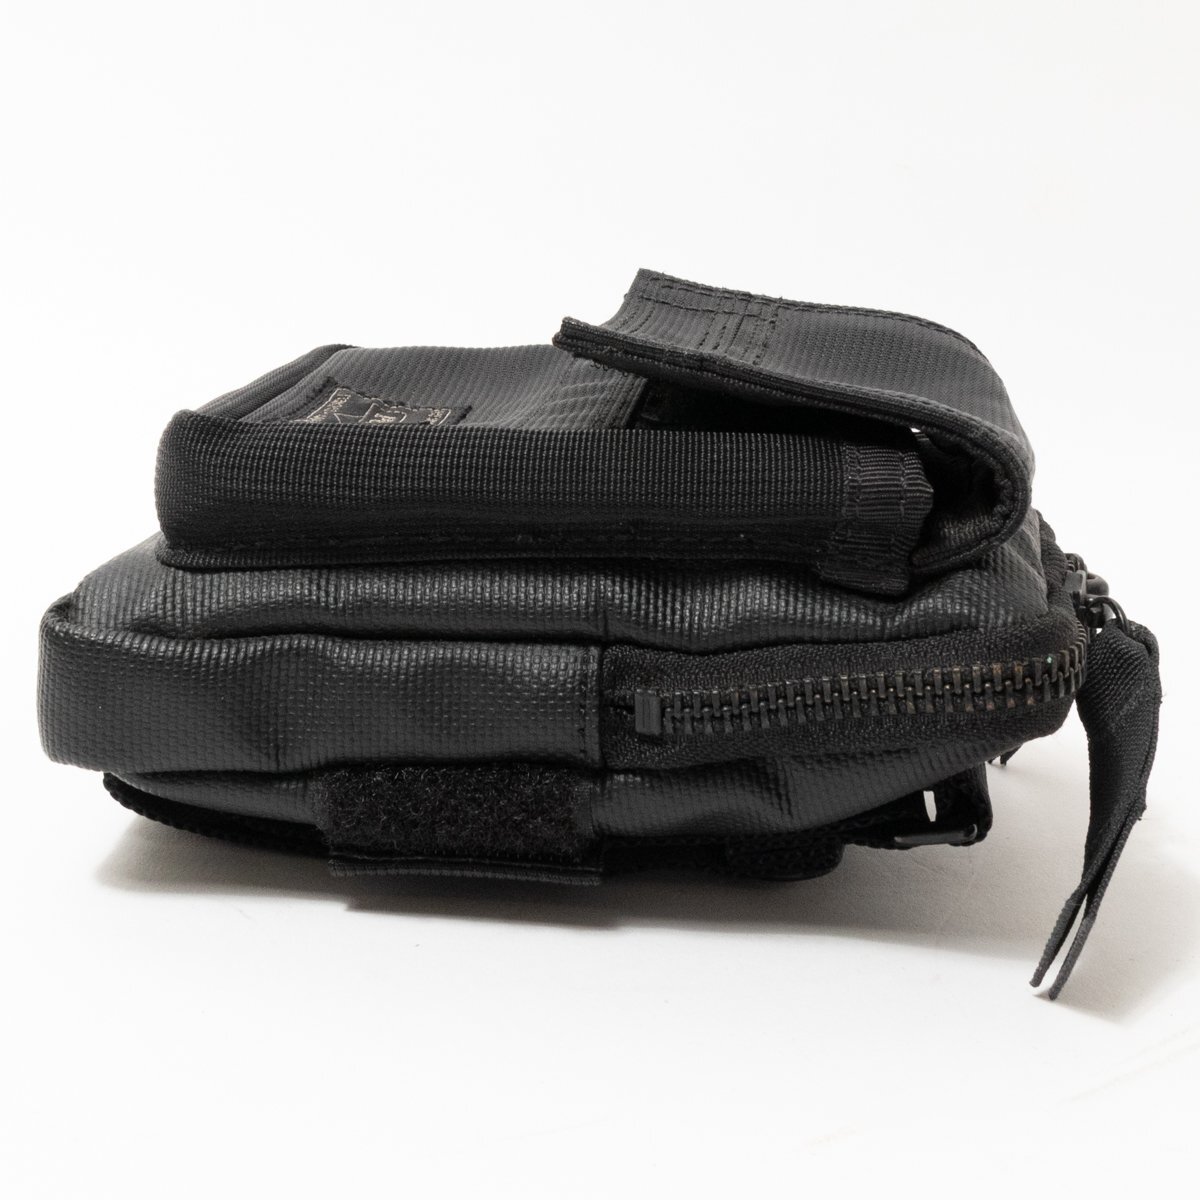 [1 иен старт ]PORTER Porter Yoshida bag сделано в Японии PRISMp ритм сумка поясная сумка нейлон черный чёрный милитари вкус 